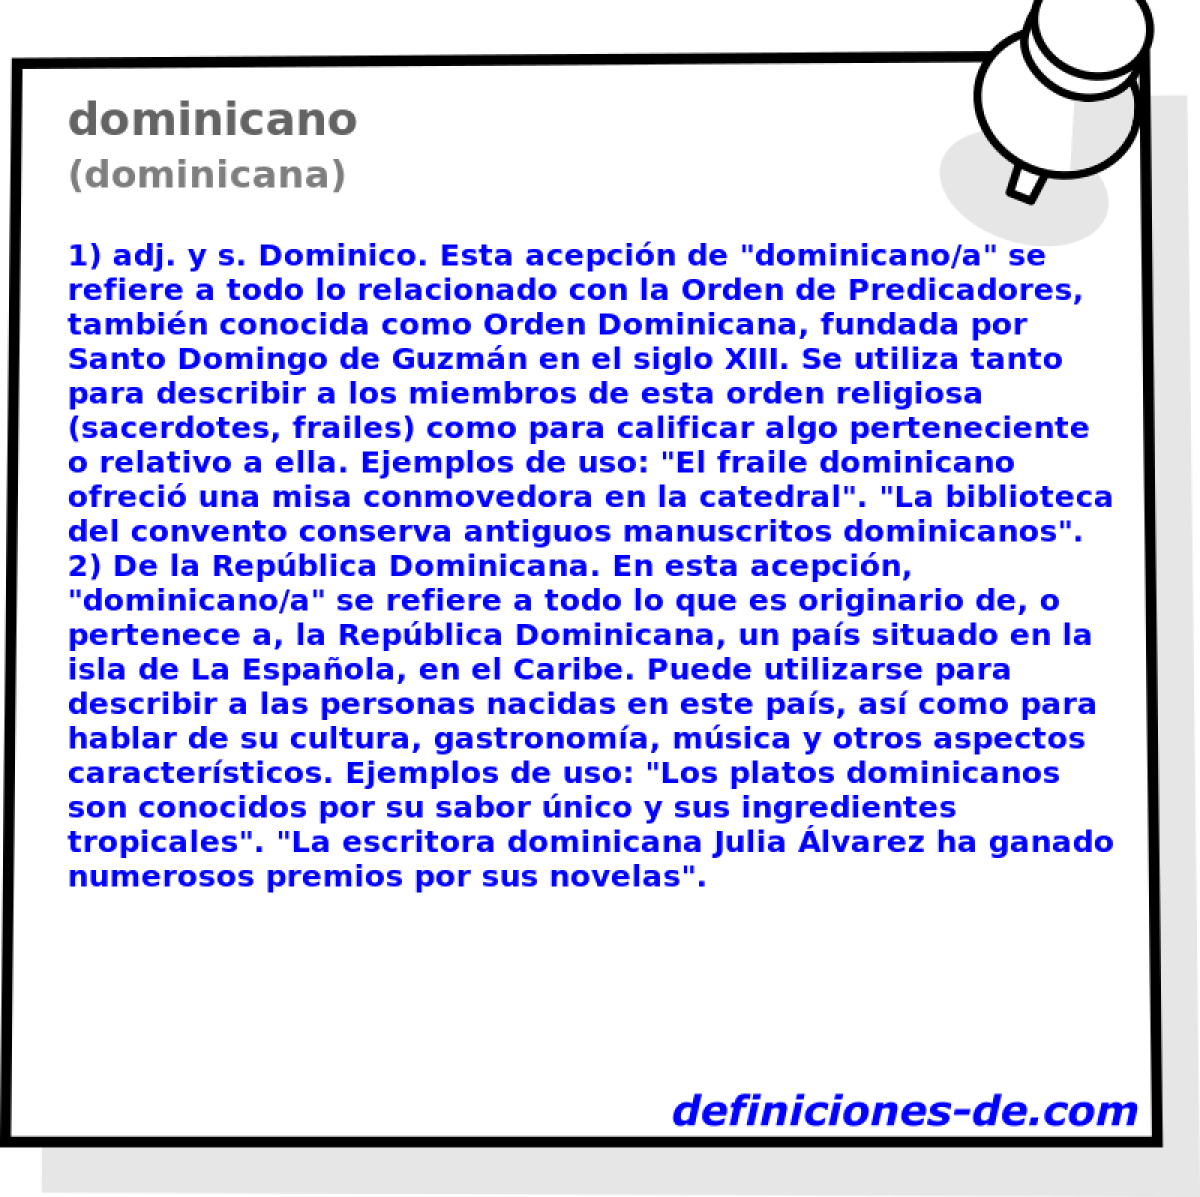 dominicano (dominicana)